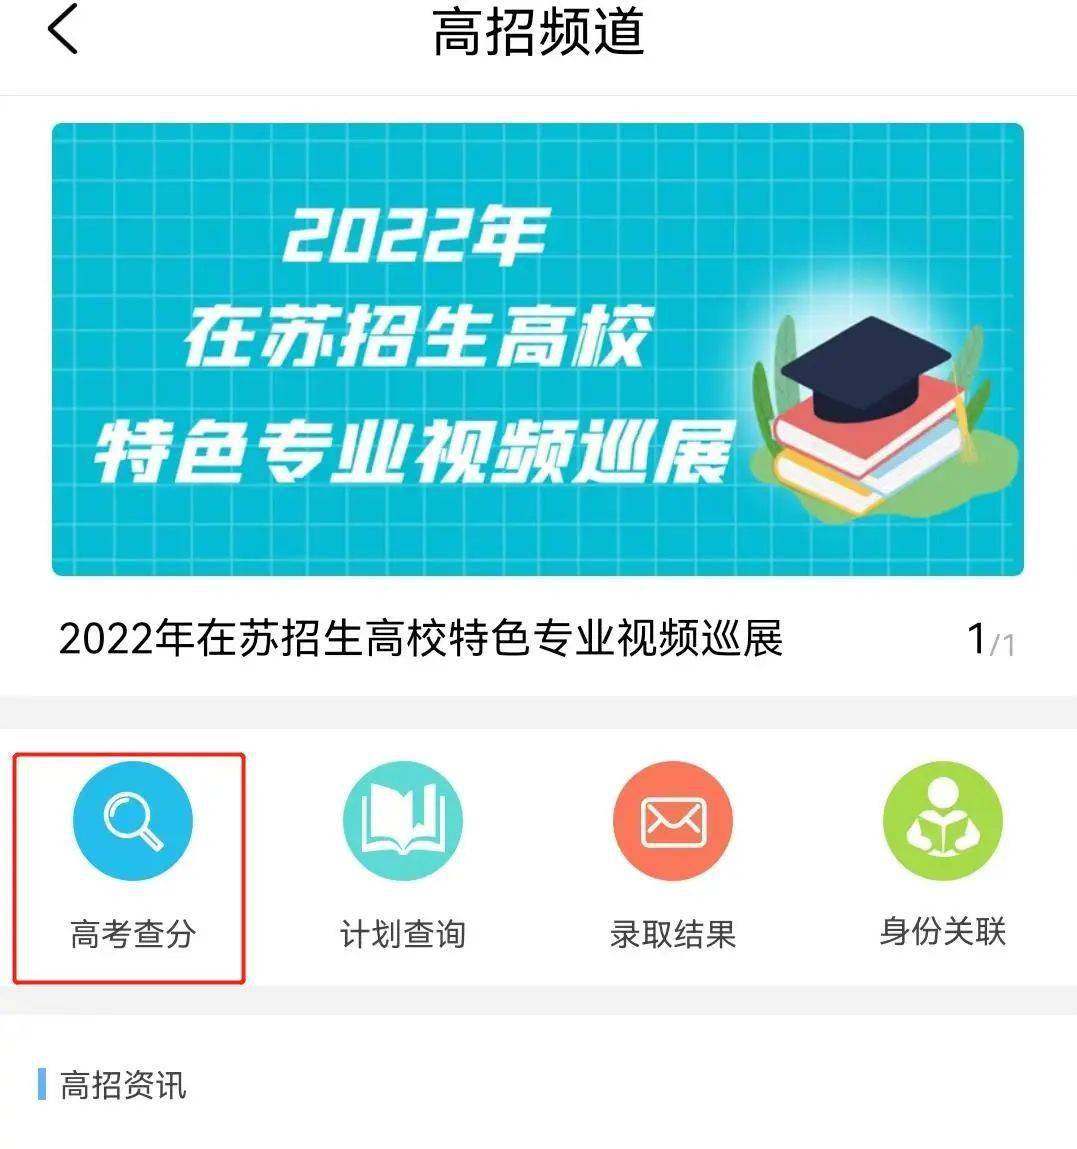 2022年江苏省高考查分方式